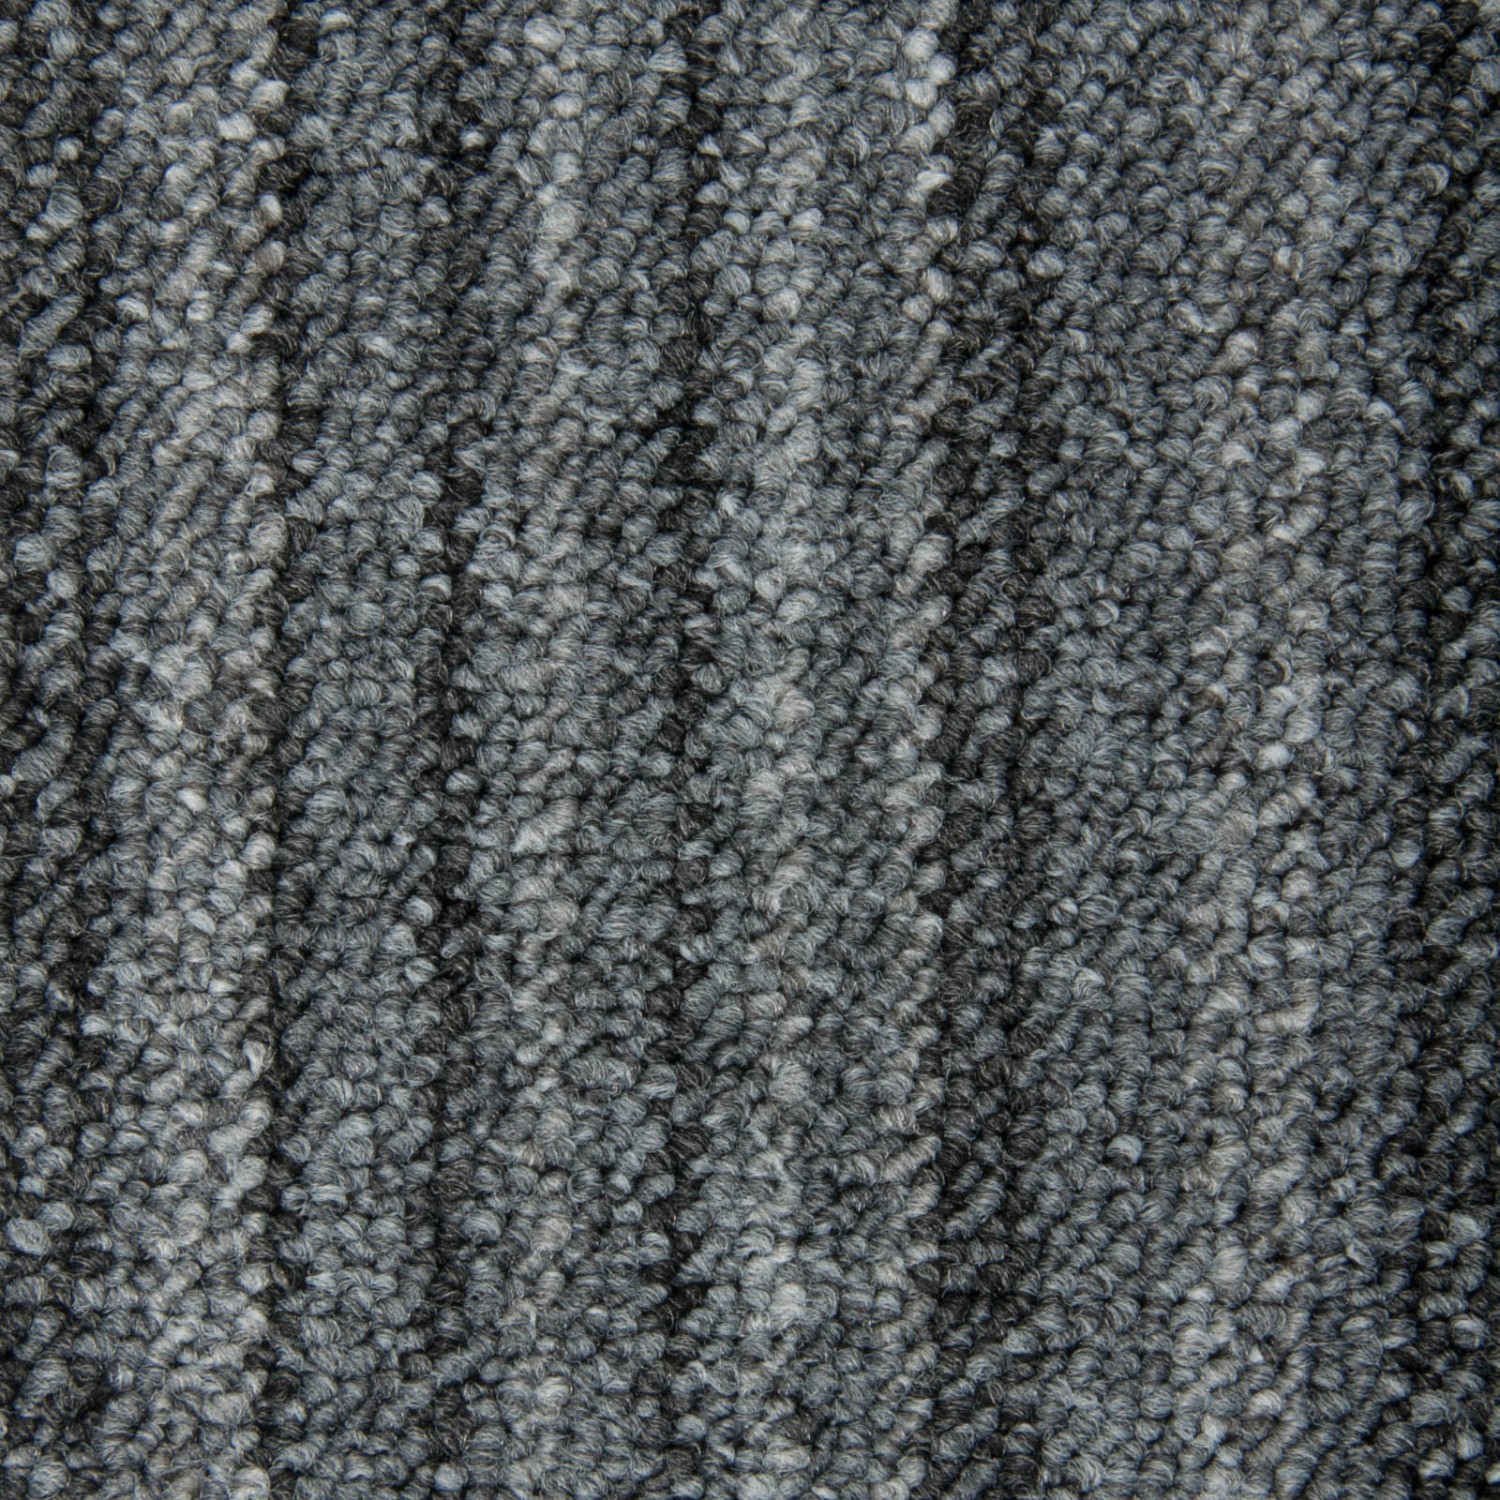 Schatex Teppichdielen Selbstliegend Schatex Schlingenteppich In Grau Als Fliesen In 25x100 Cm Schlingen Teppich Dielen I